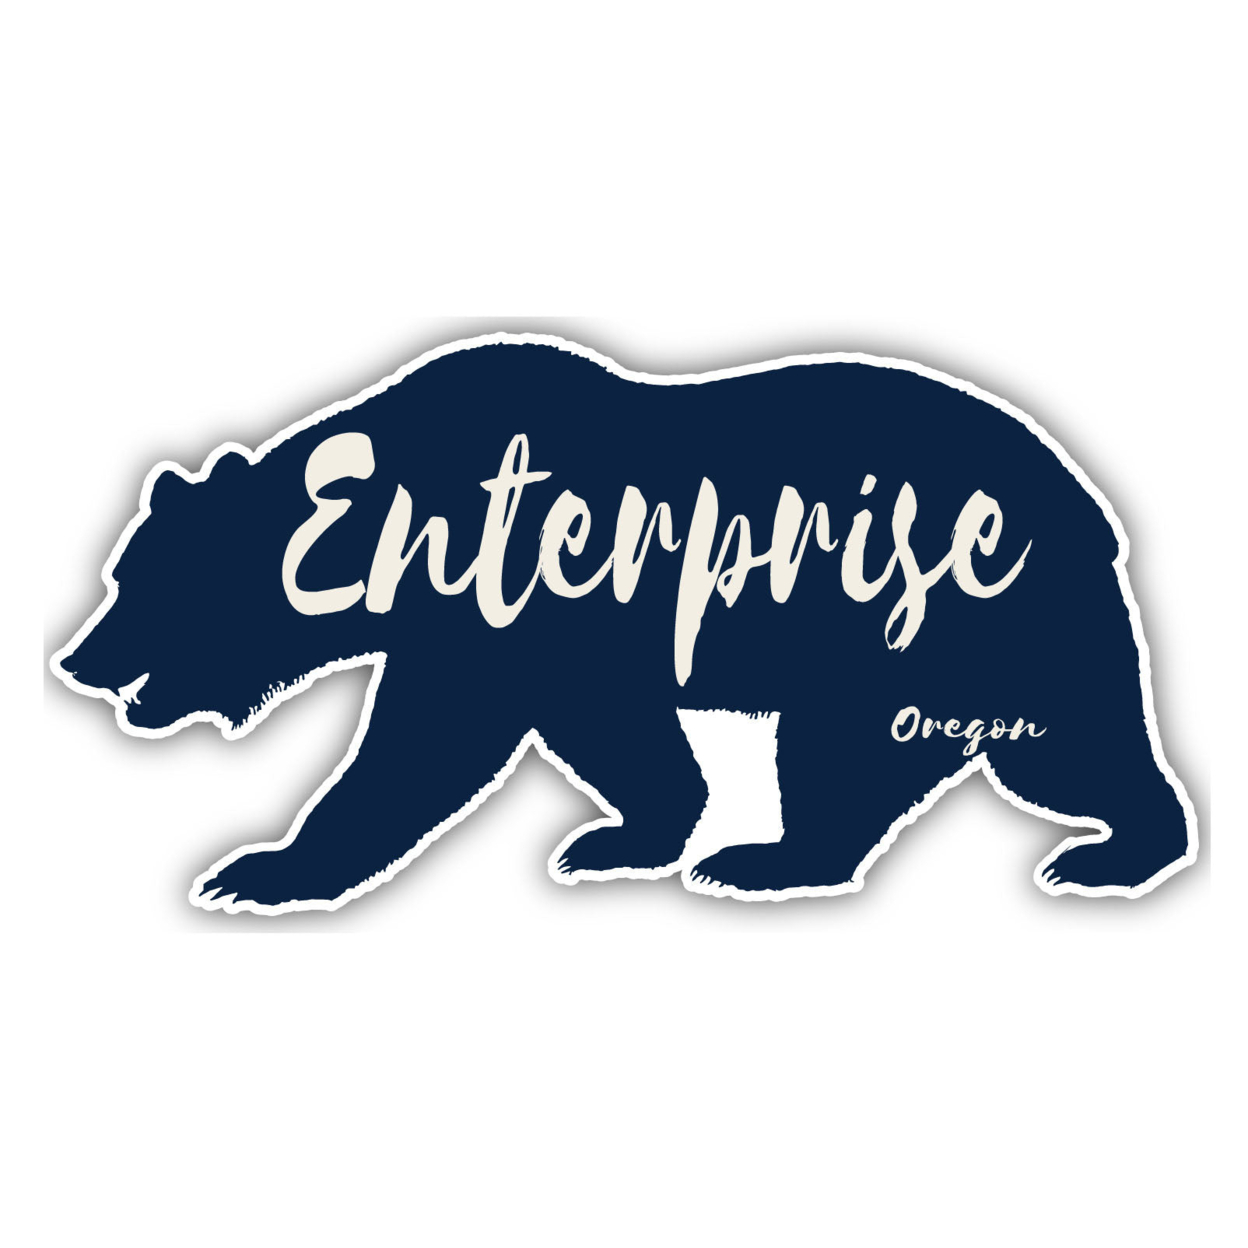 Enterprise Oregon Souvenir Decorative Stickers (Choose Theme And Size) - Single Unit, 4-Inch, Bear